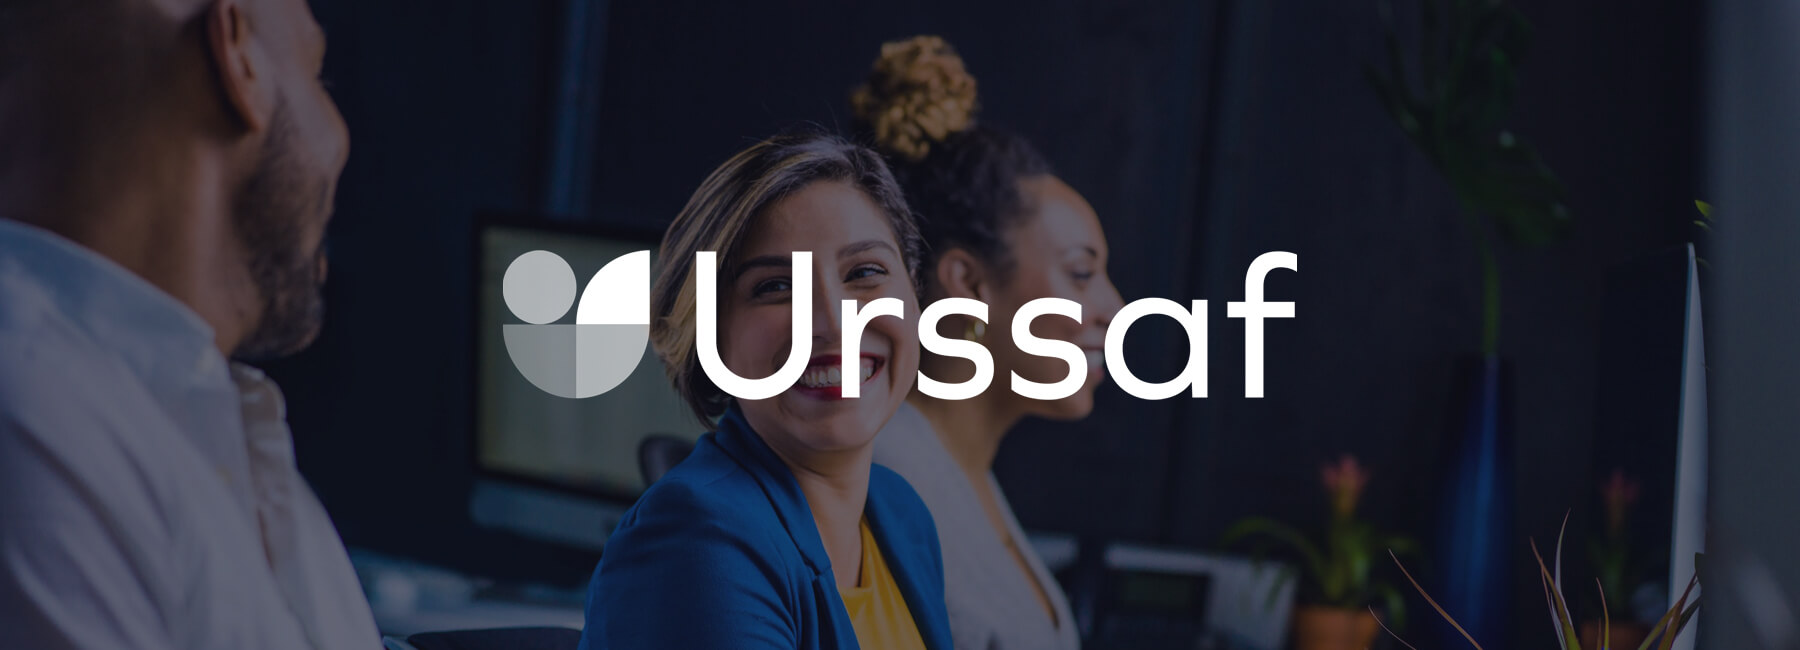 l’Urssaf renforce son programme de voix du client en ligne avec Mopinion